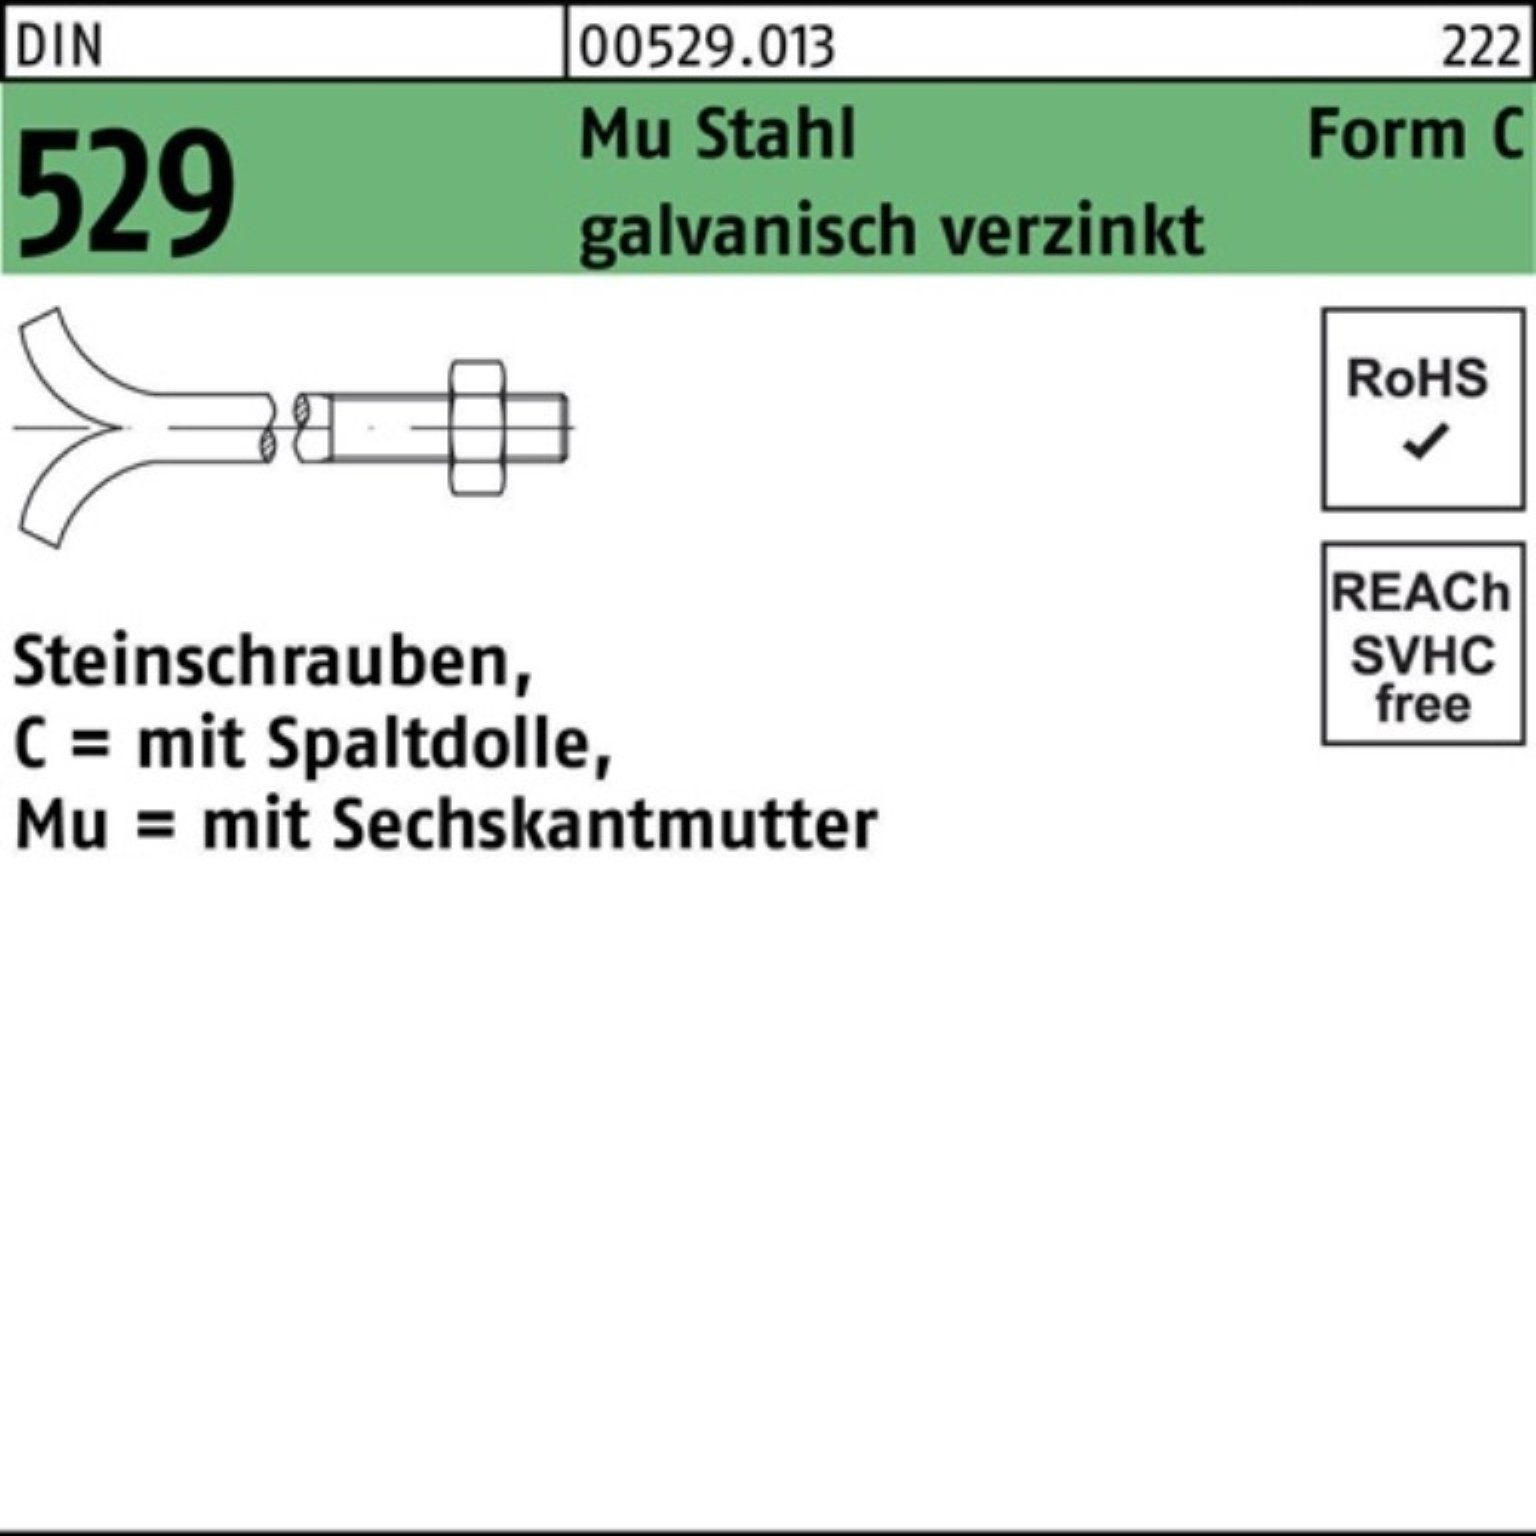 Spaltdolle/6-ktmutter Pack 12x100 100er DIN Steinschraube Reyher 529 CM Mu 3. Schraube